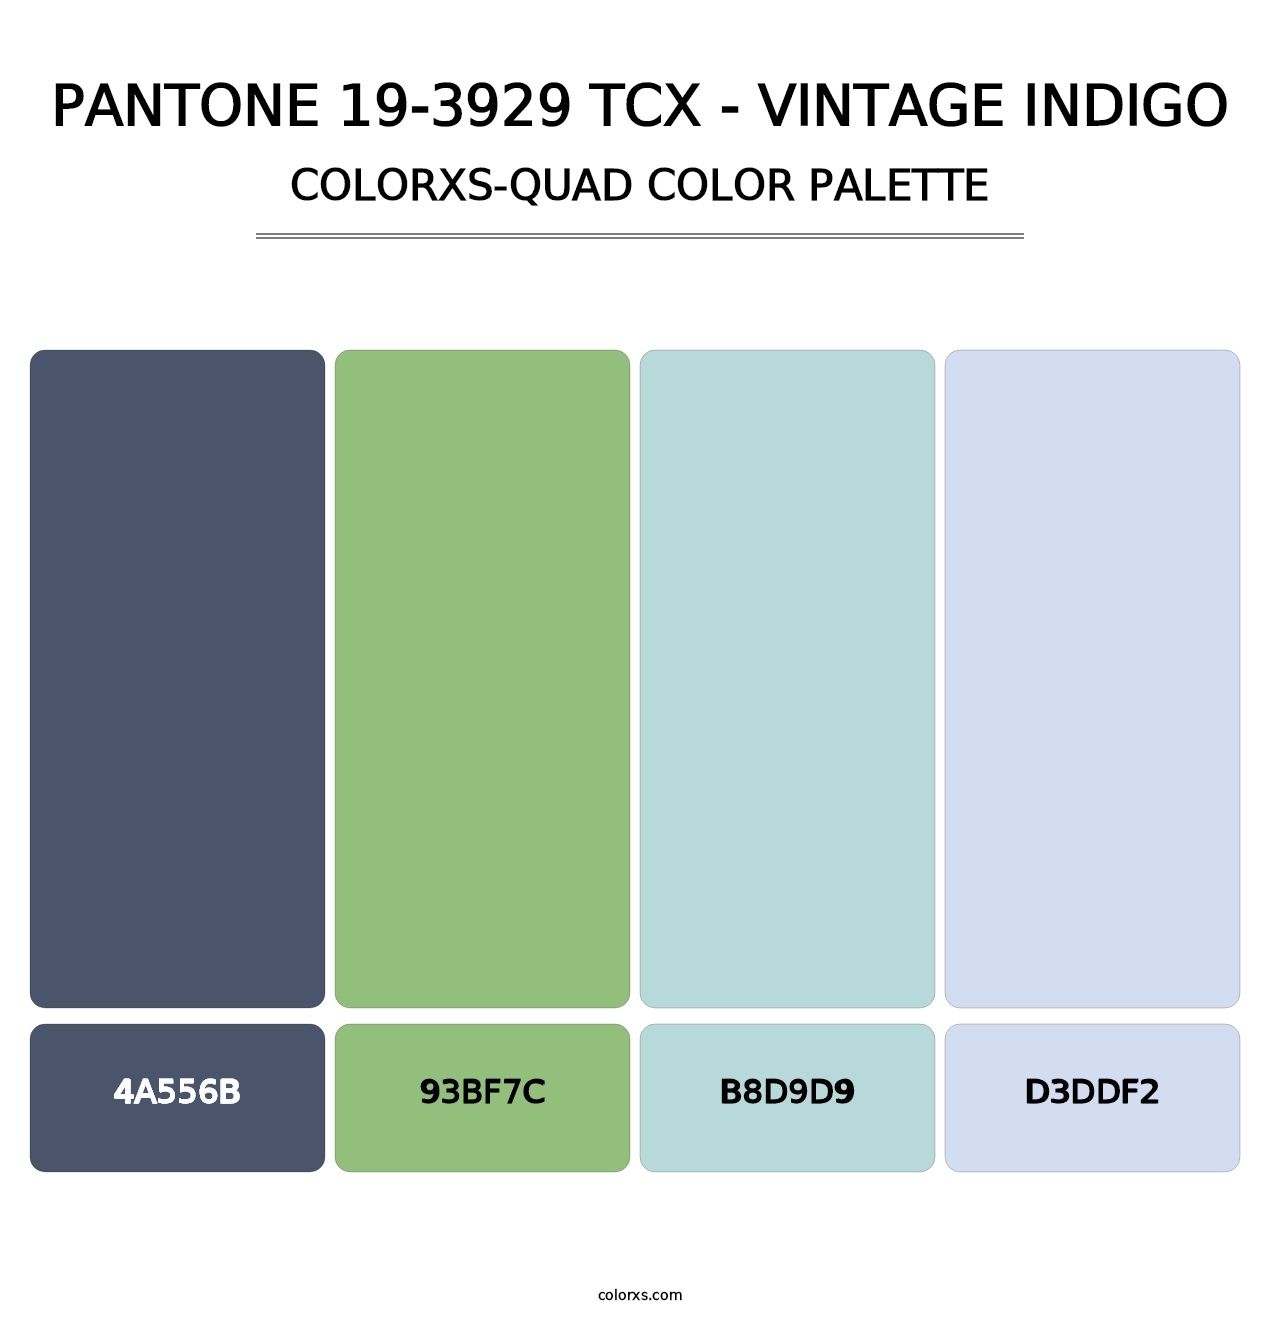 PANTONE 19-3929 TCX - Vintage Indigo - Colorxs Quad Palette